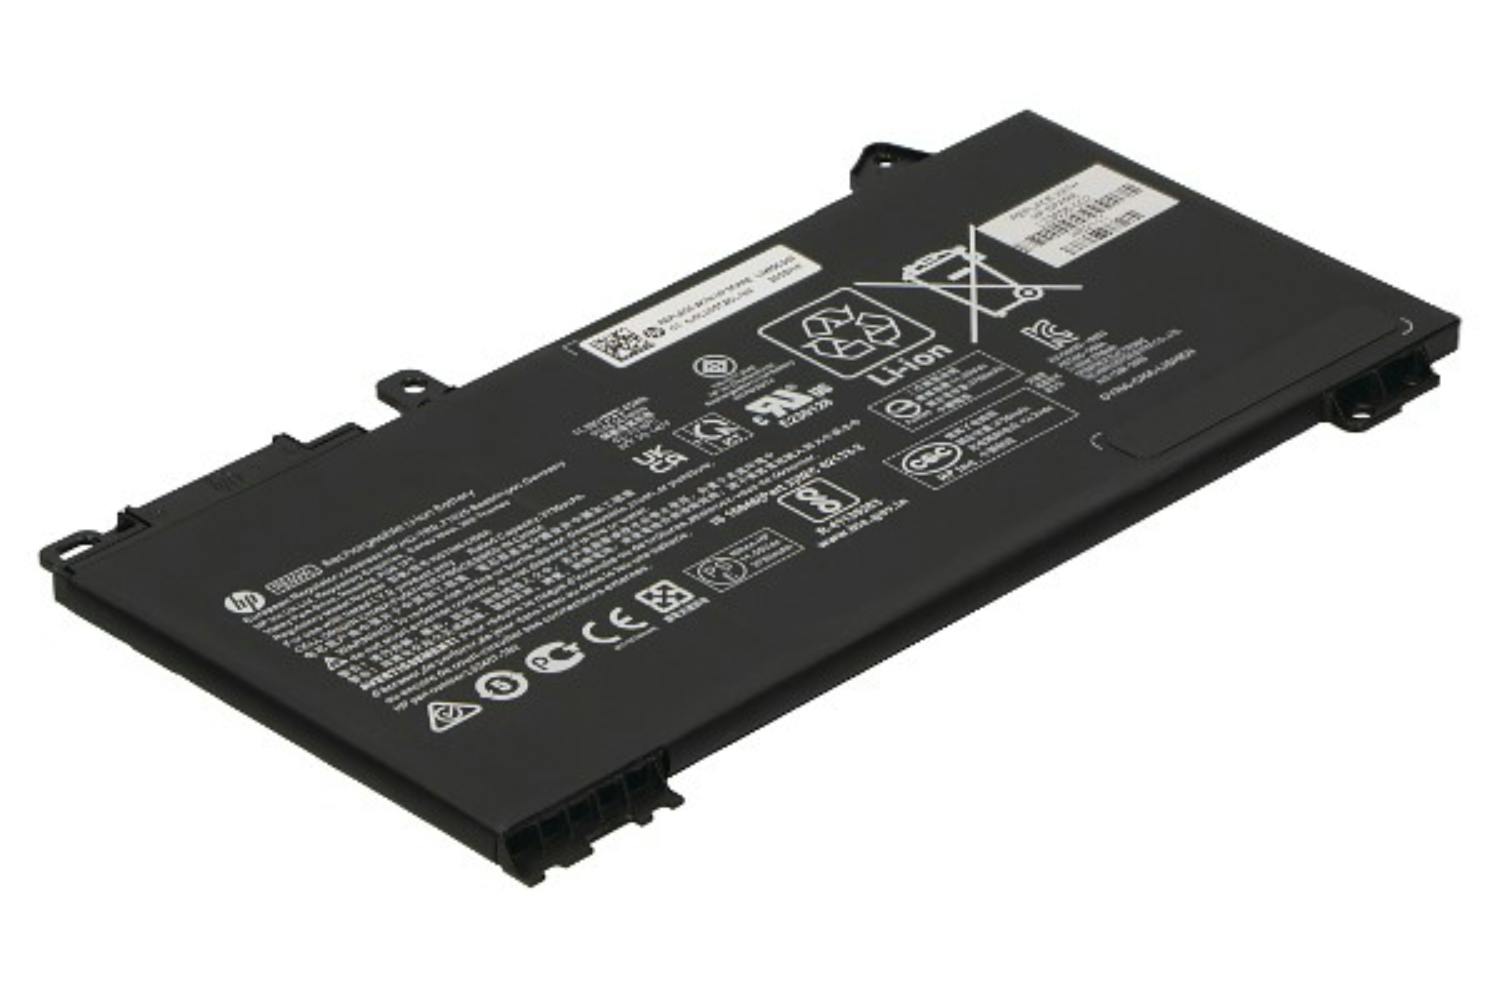 HP L32656-002 3750mAh Main Battery Pack